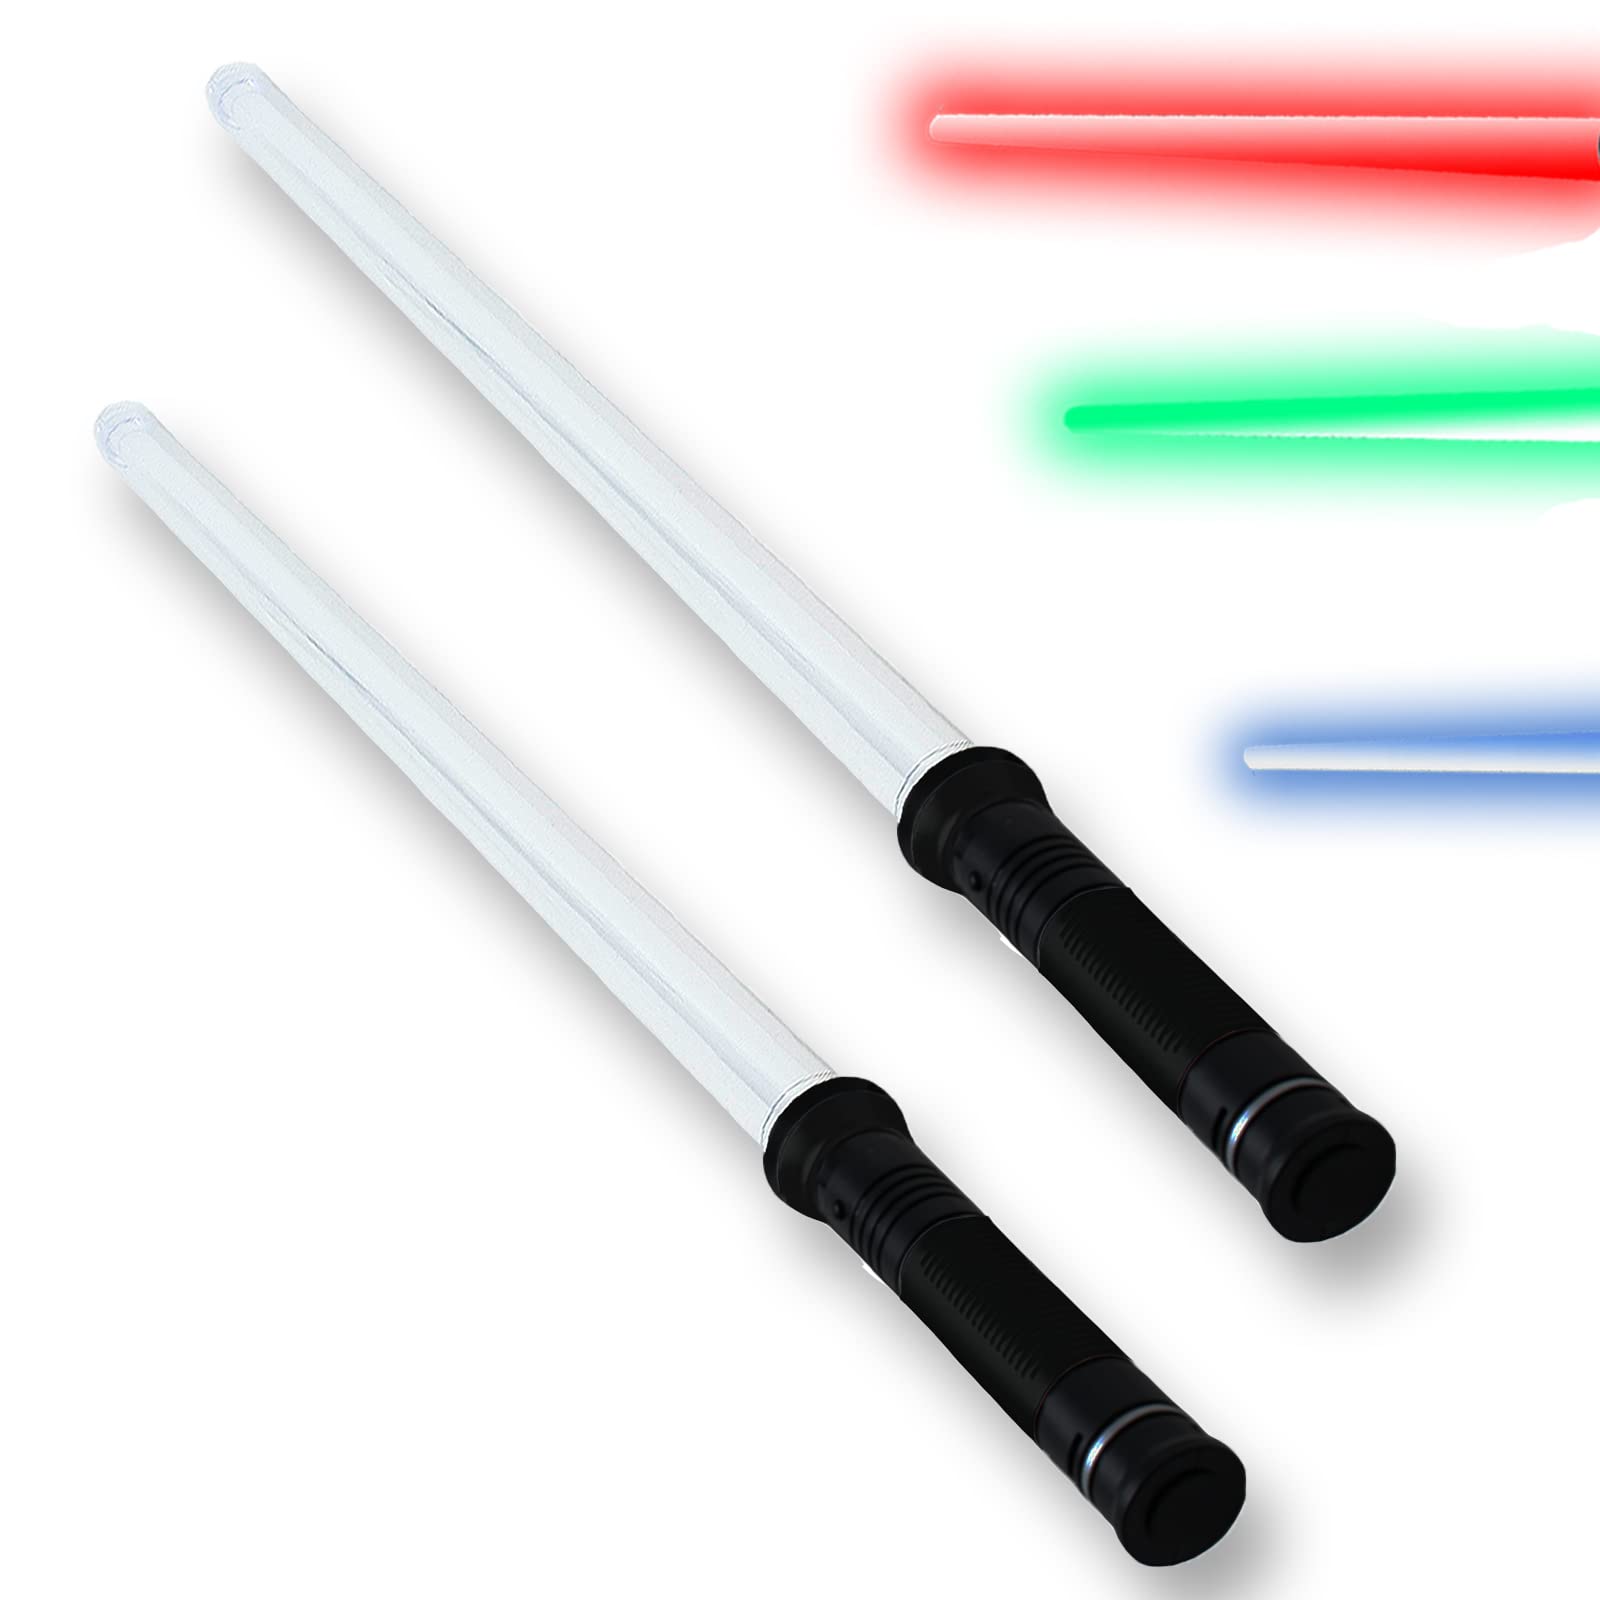 TE-Trend 2 Stück Laserschwert Lichtschwert Schwert mit Sound und 4-Fach LED Lichteffekte blau grün rot Dauerlicht bis 78 cm ausziehbar SGS geprüft Griff schwarz